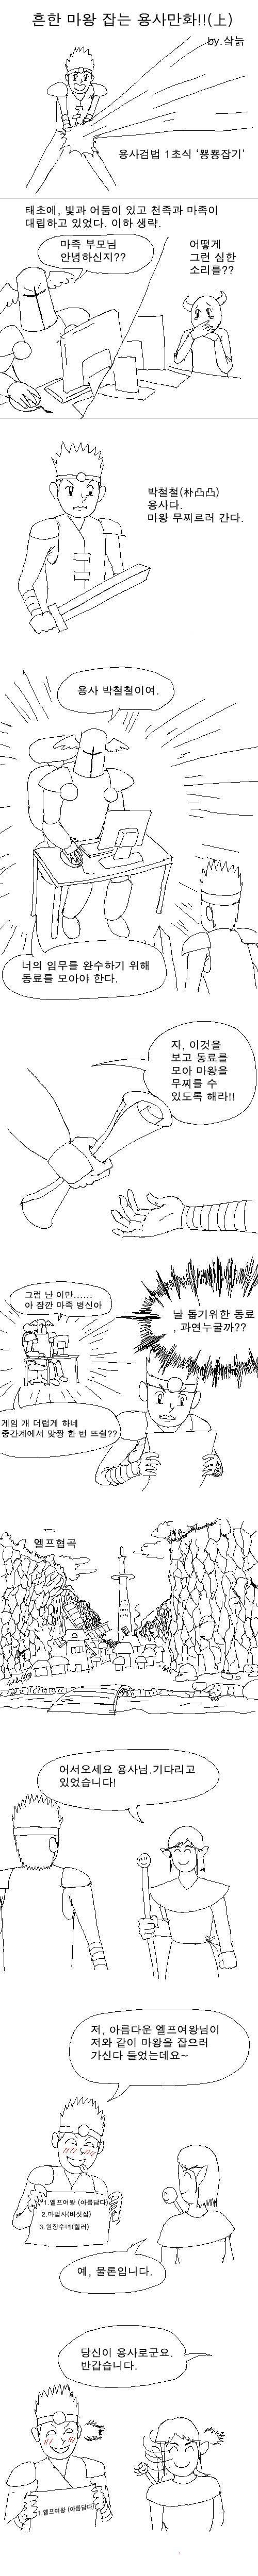 [스압]흔한 마왕잡는 용사만화.jpg